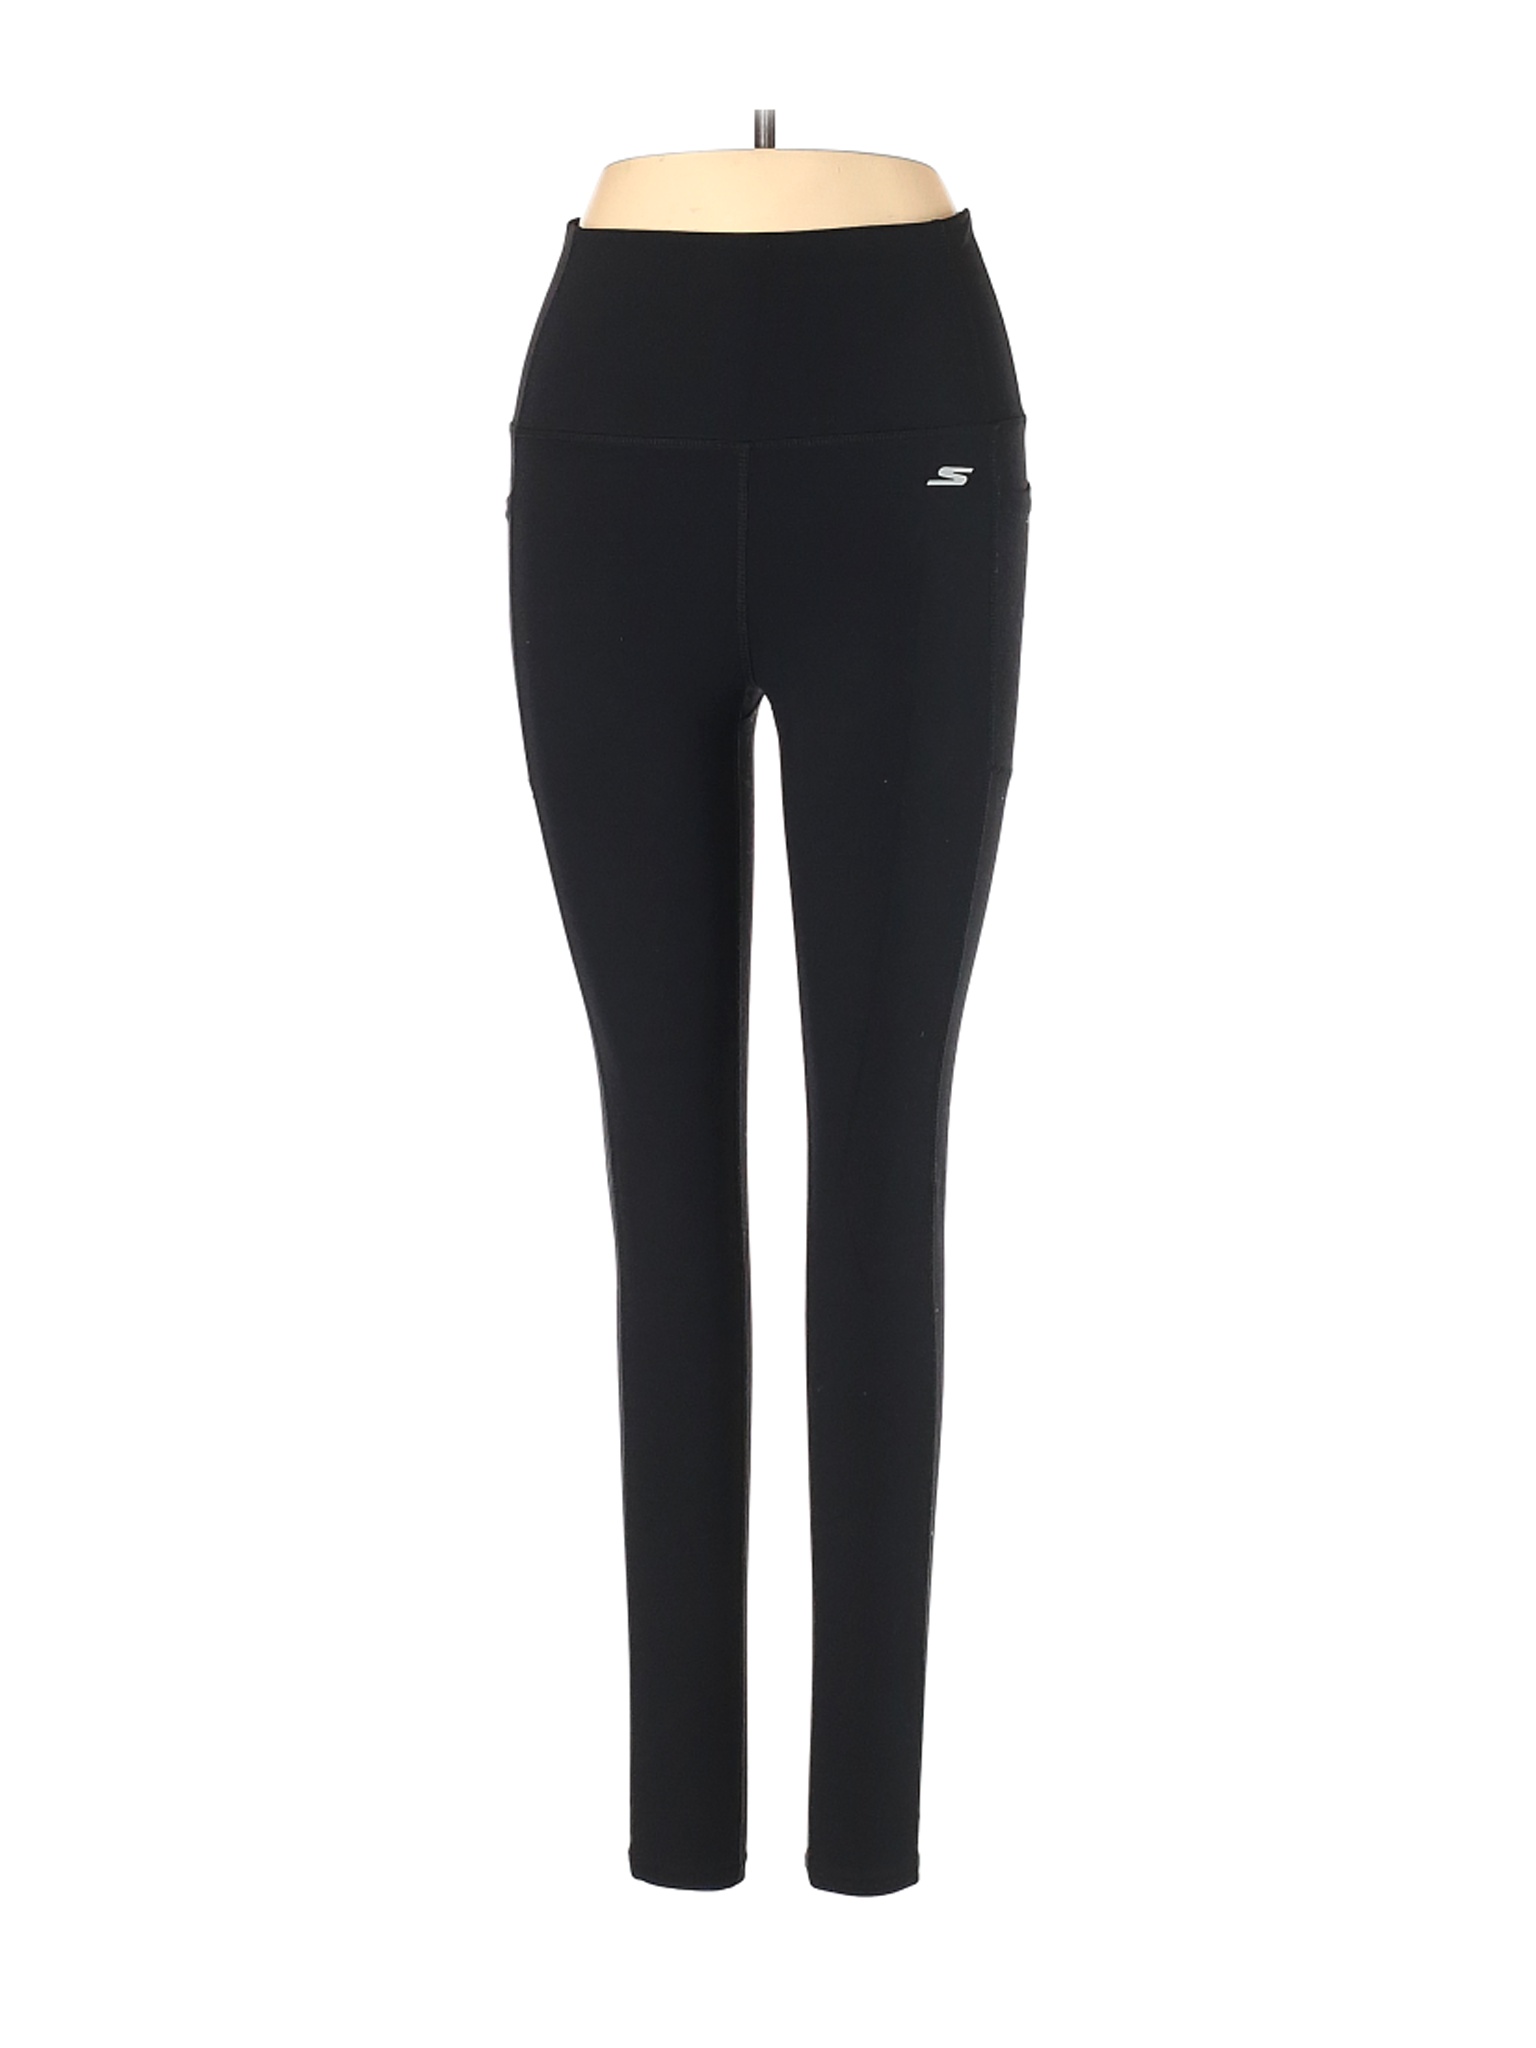 Skechers Women Black Active Pants S | eBay